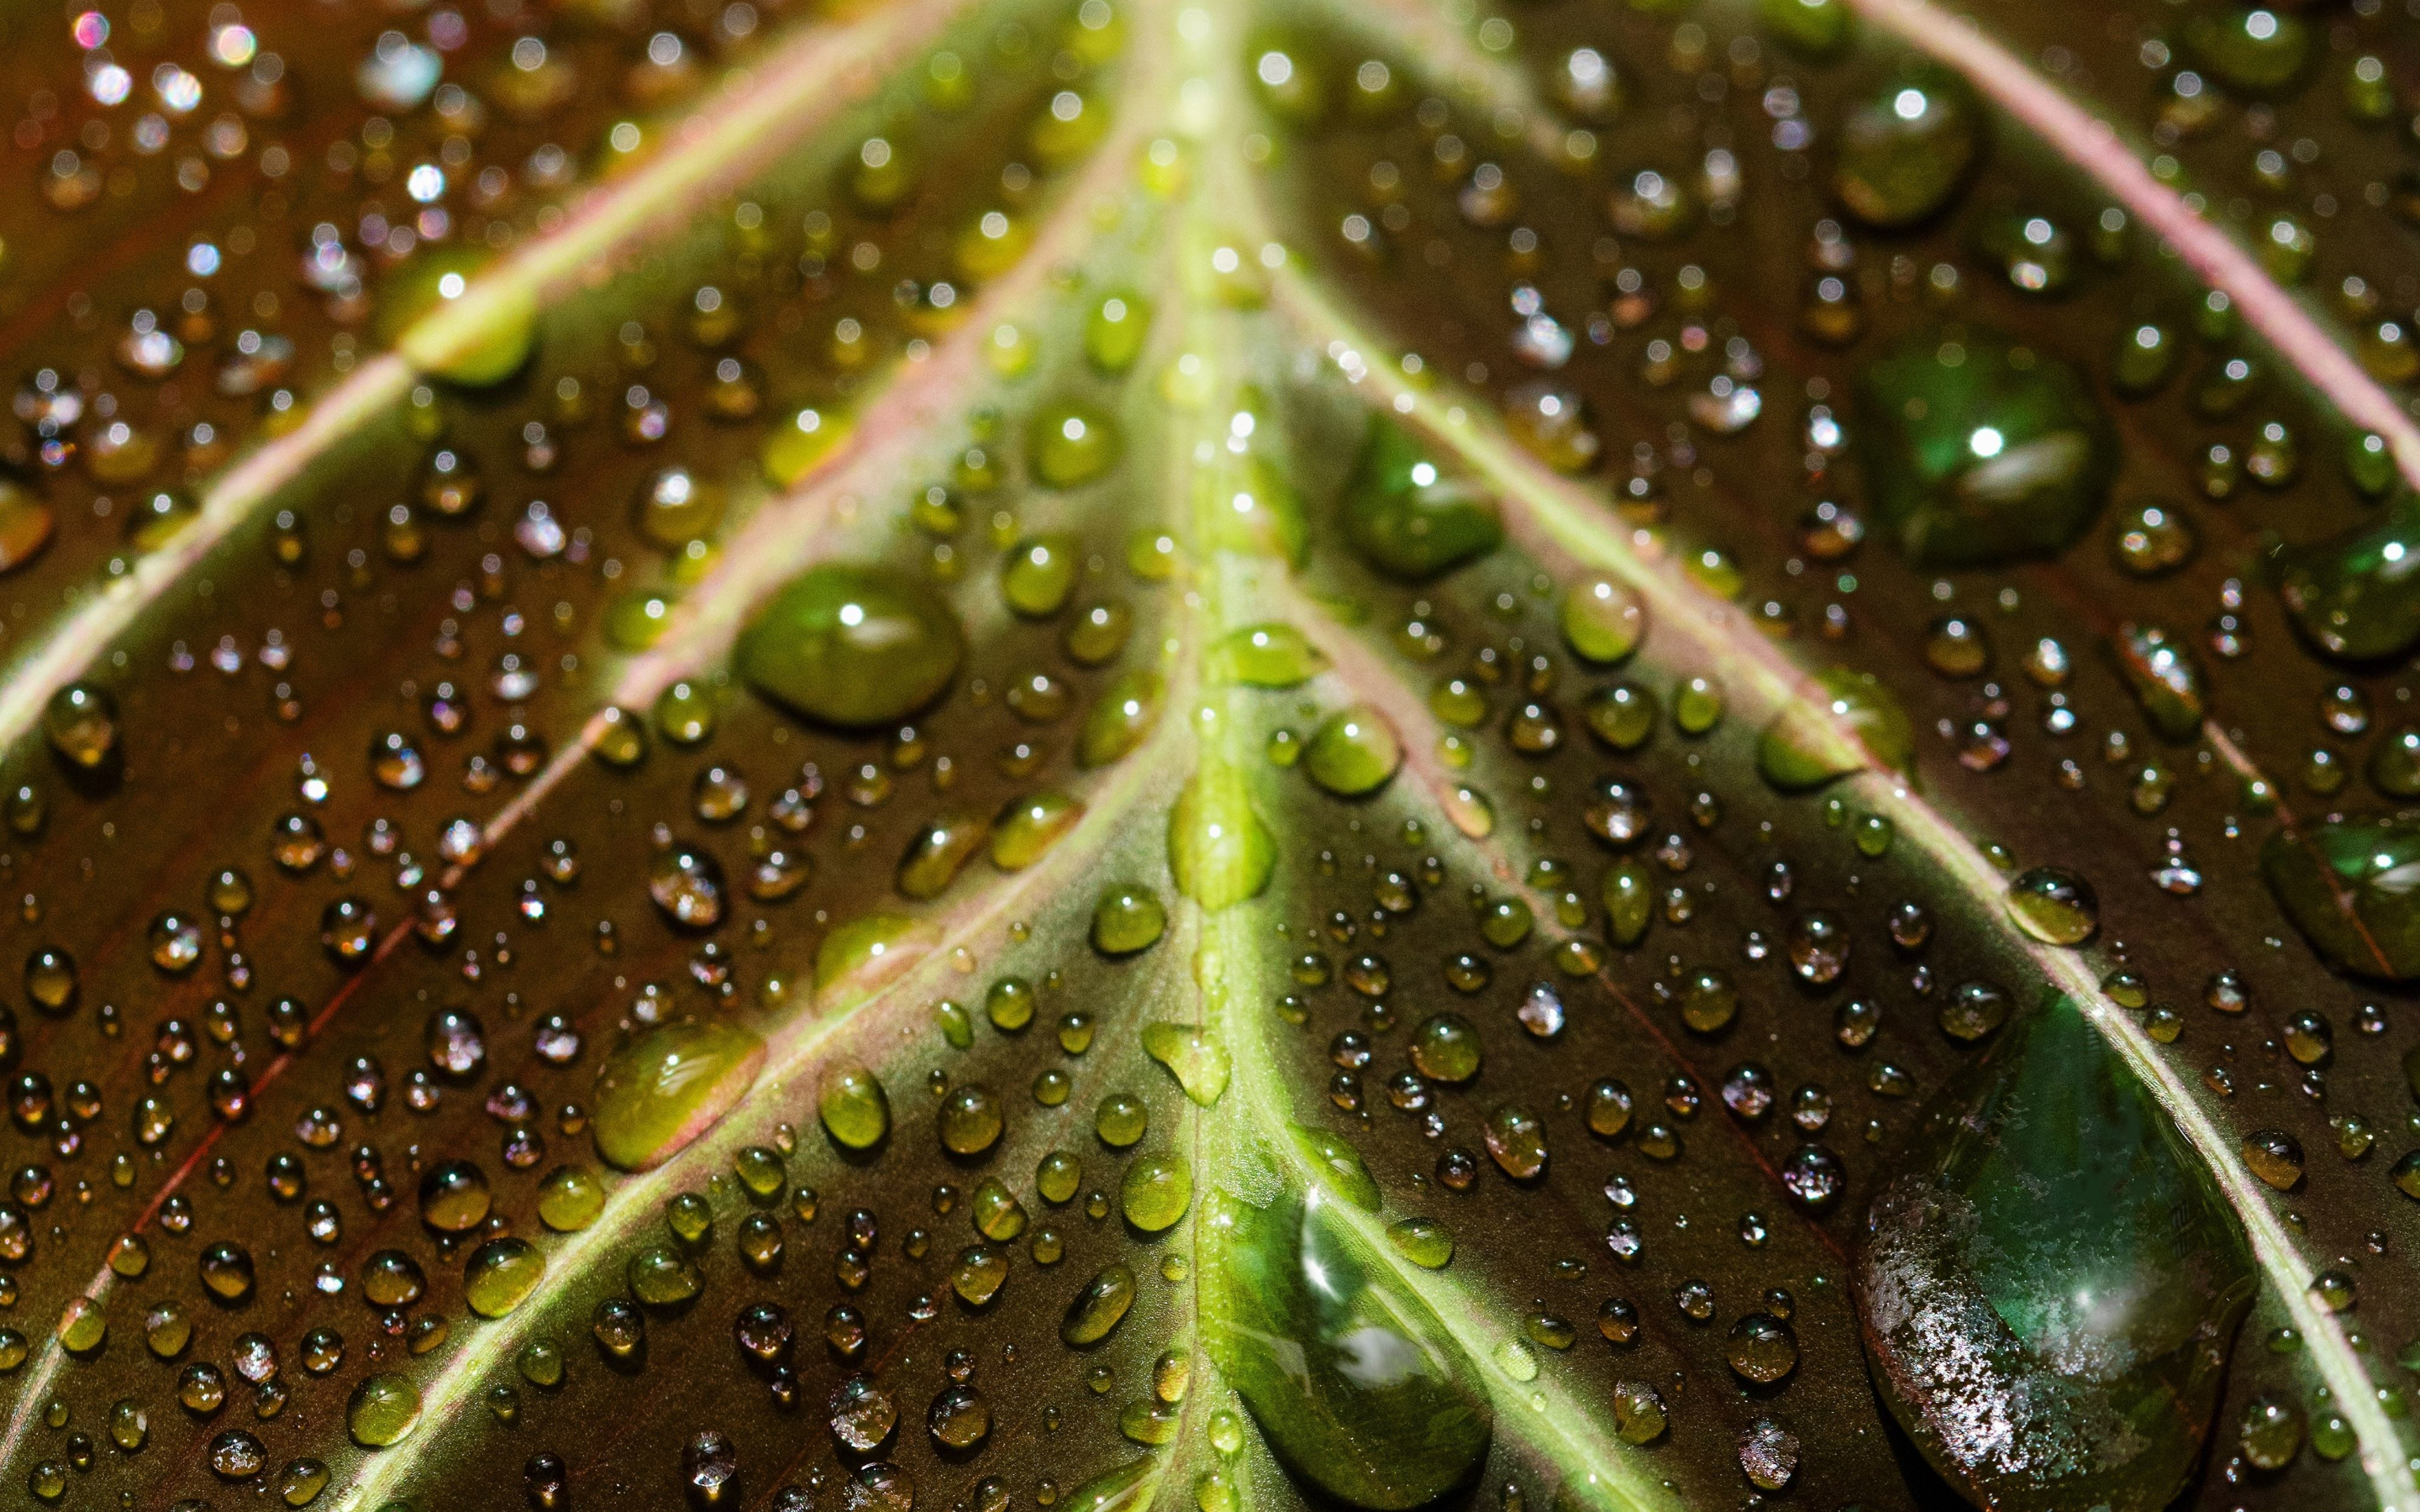 Veins of the leaf, close up, drops, 2880x1800 wallpaper